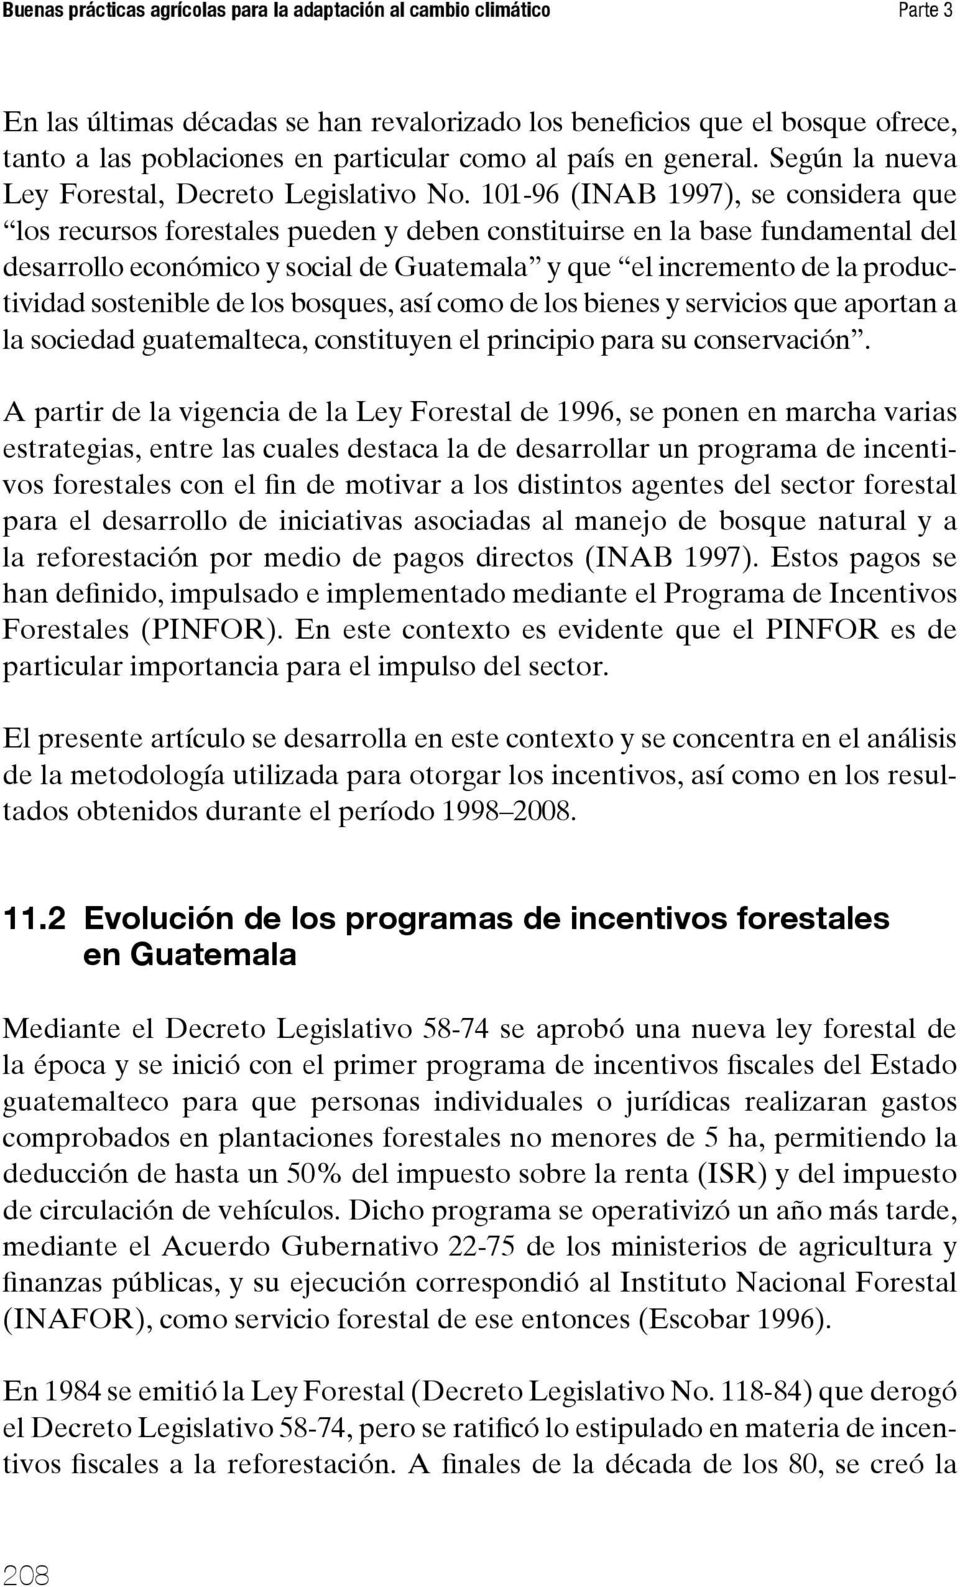 101-96 (INAB 1997), se considera que los recursos forestales pueden y deben constituirse en la base fundamental del desarrollo económico y social de Guatemala y que el incremento de la productividad